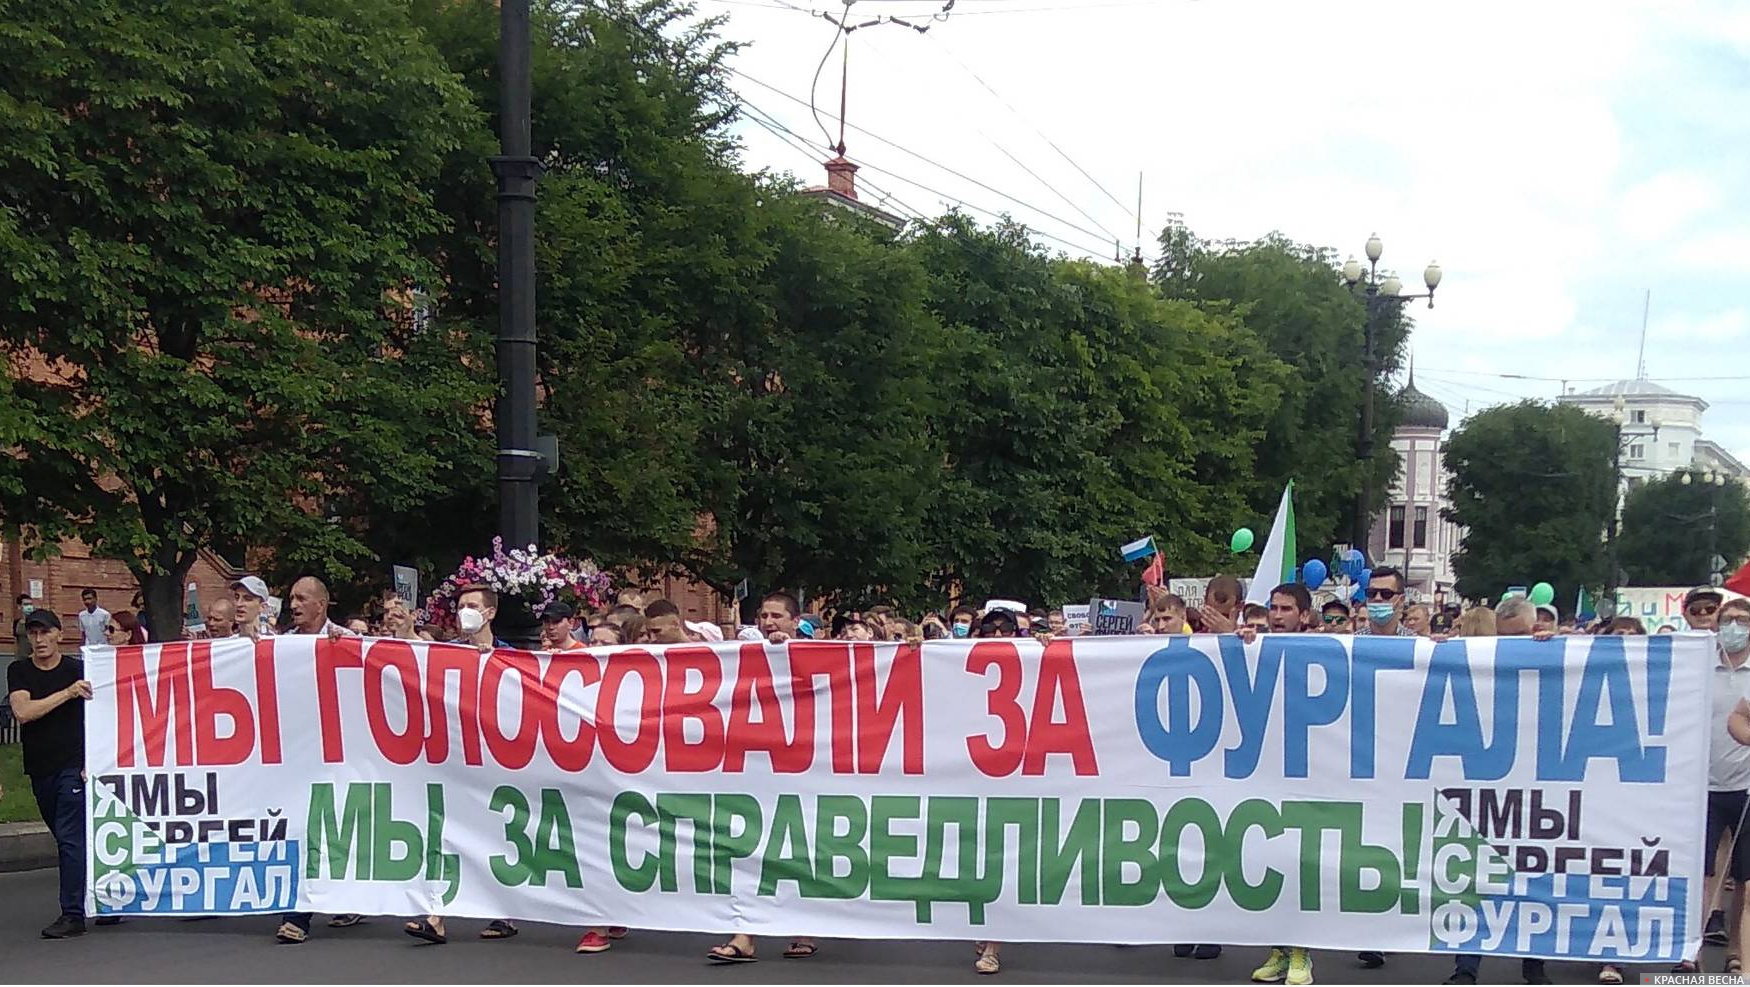 Демонстрация в Хабаровске в поддержку бывшего губернатора С. Фургала